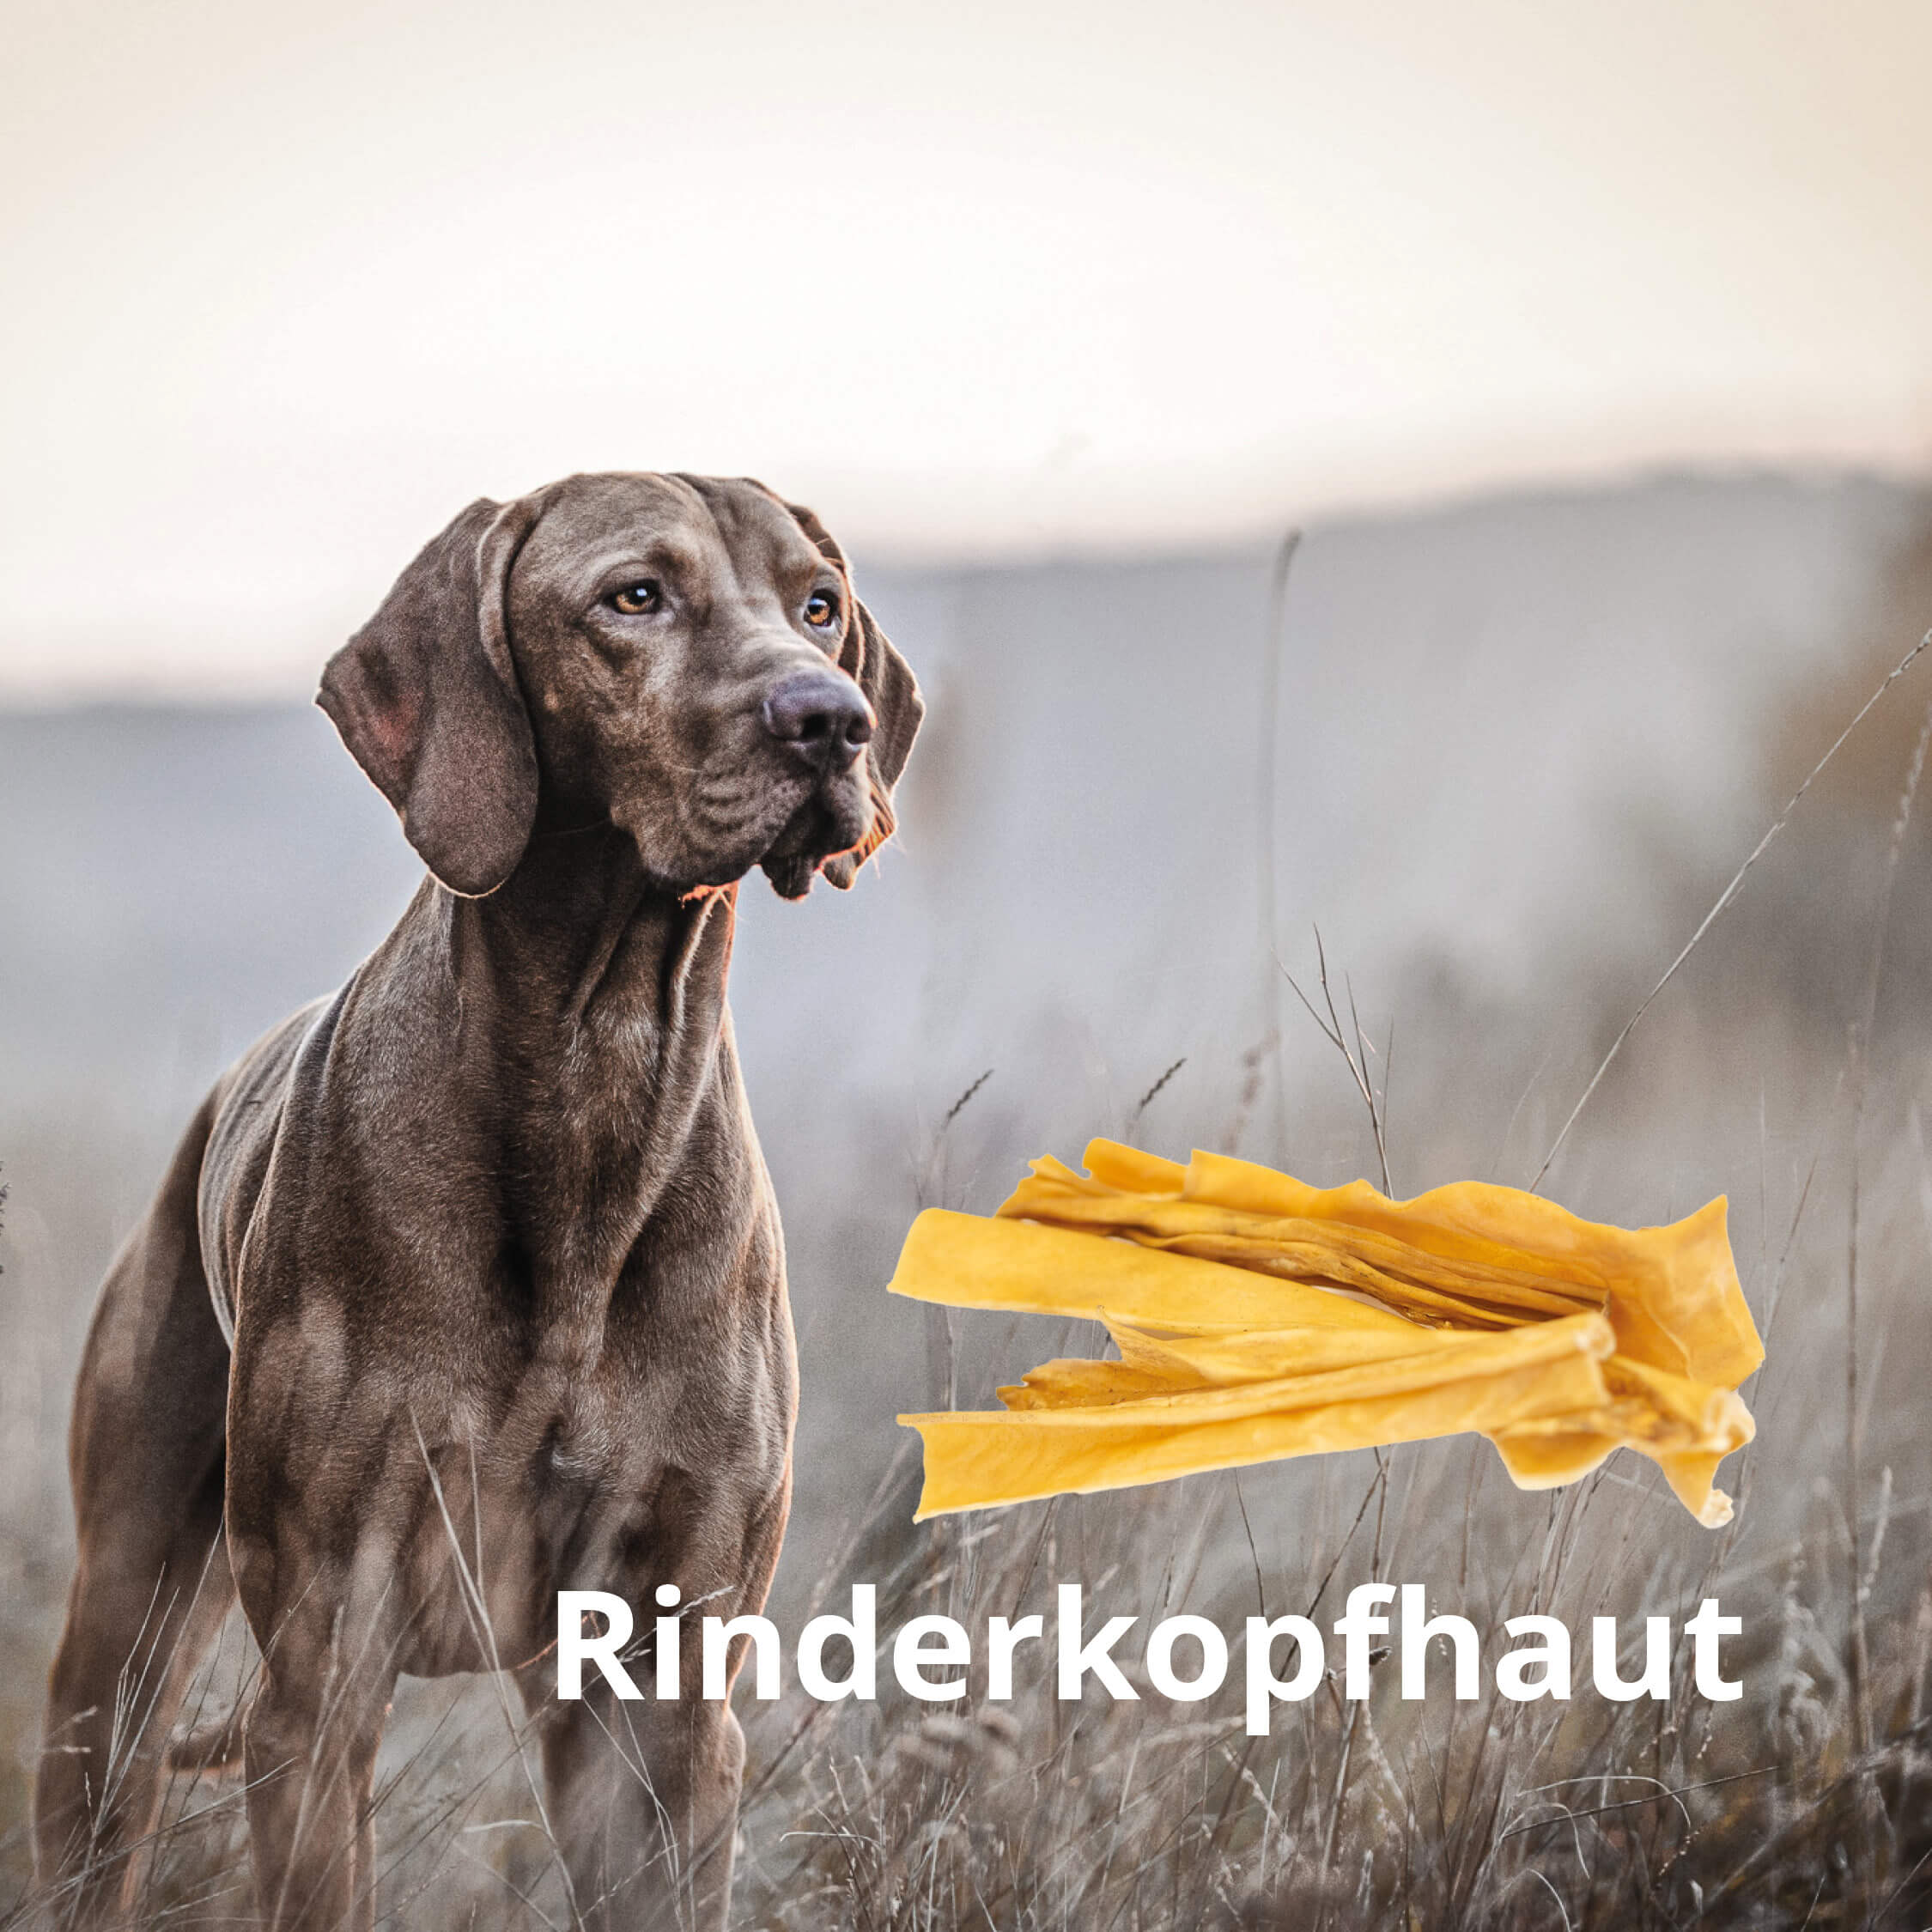 MIOMERA Rinderkopfhaut 1kg - Premium Kausnack und natürliche Zahnpflege für Deinen Hund! Handsortiert in Schleswig-Holstein | 15cm Stücke | 100% Rind | ideale Zahnreinigung